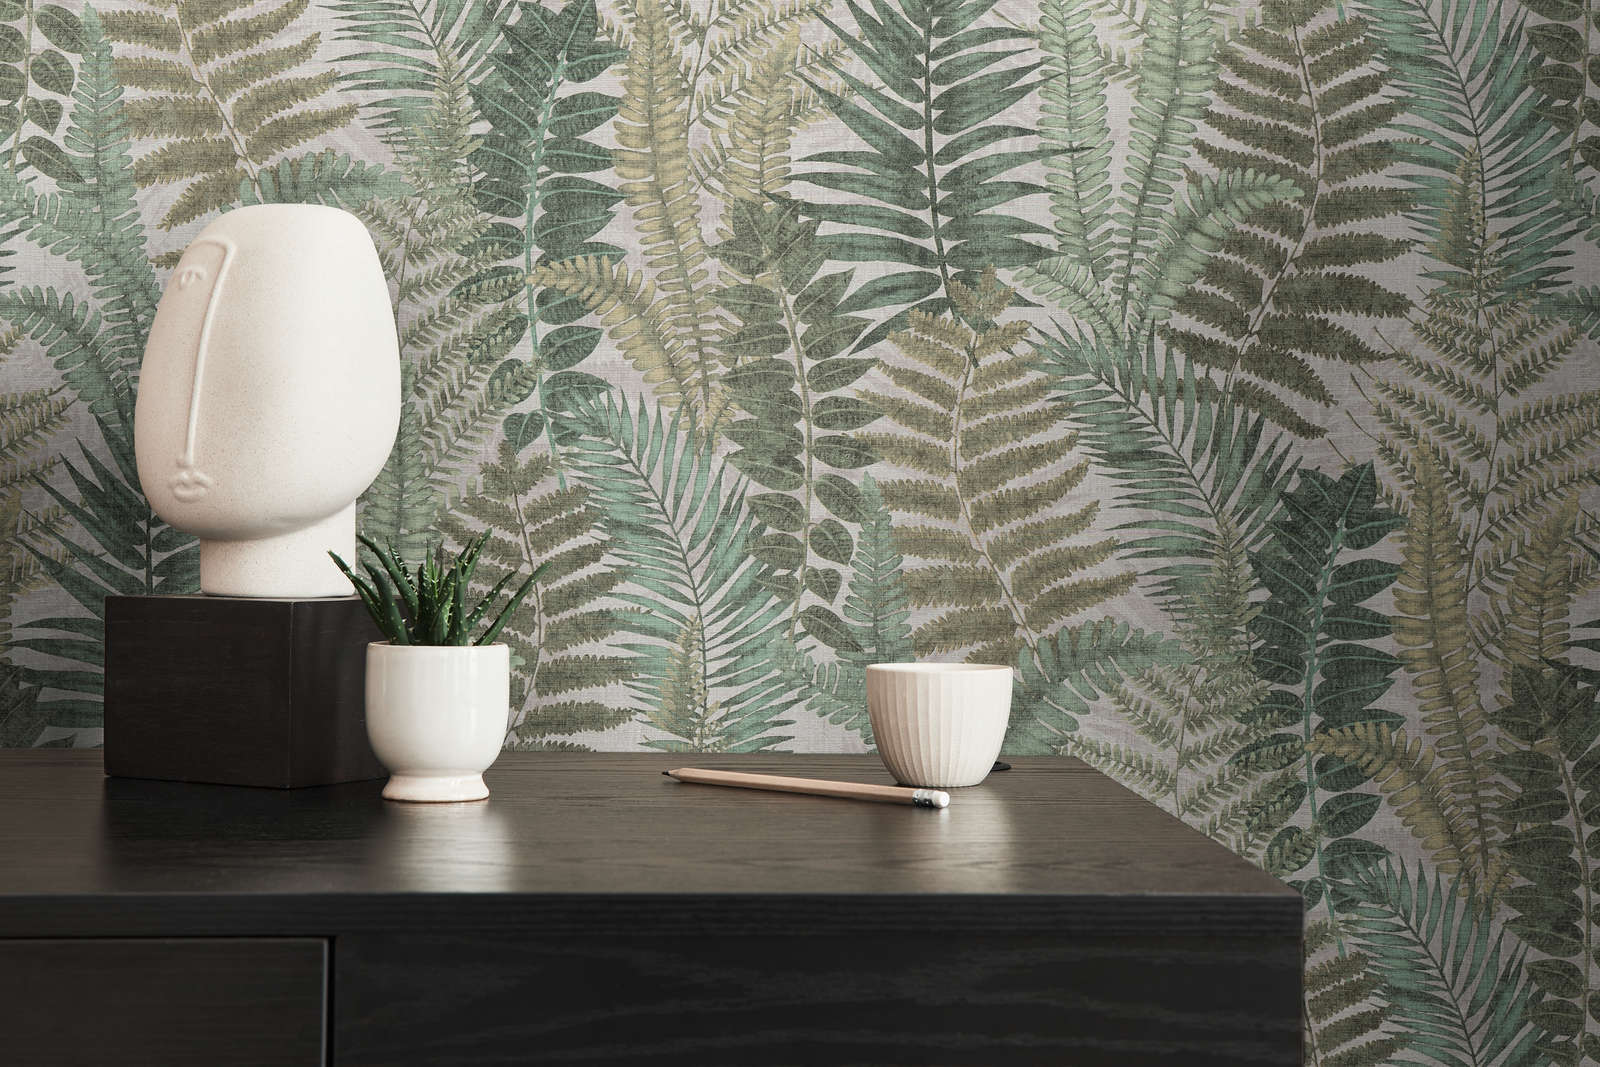             wallpaper floral with fern leaves light textured, matt - beige, green, brown
        